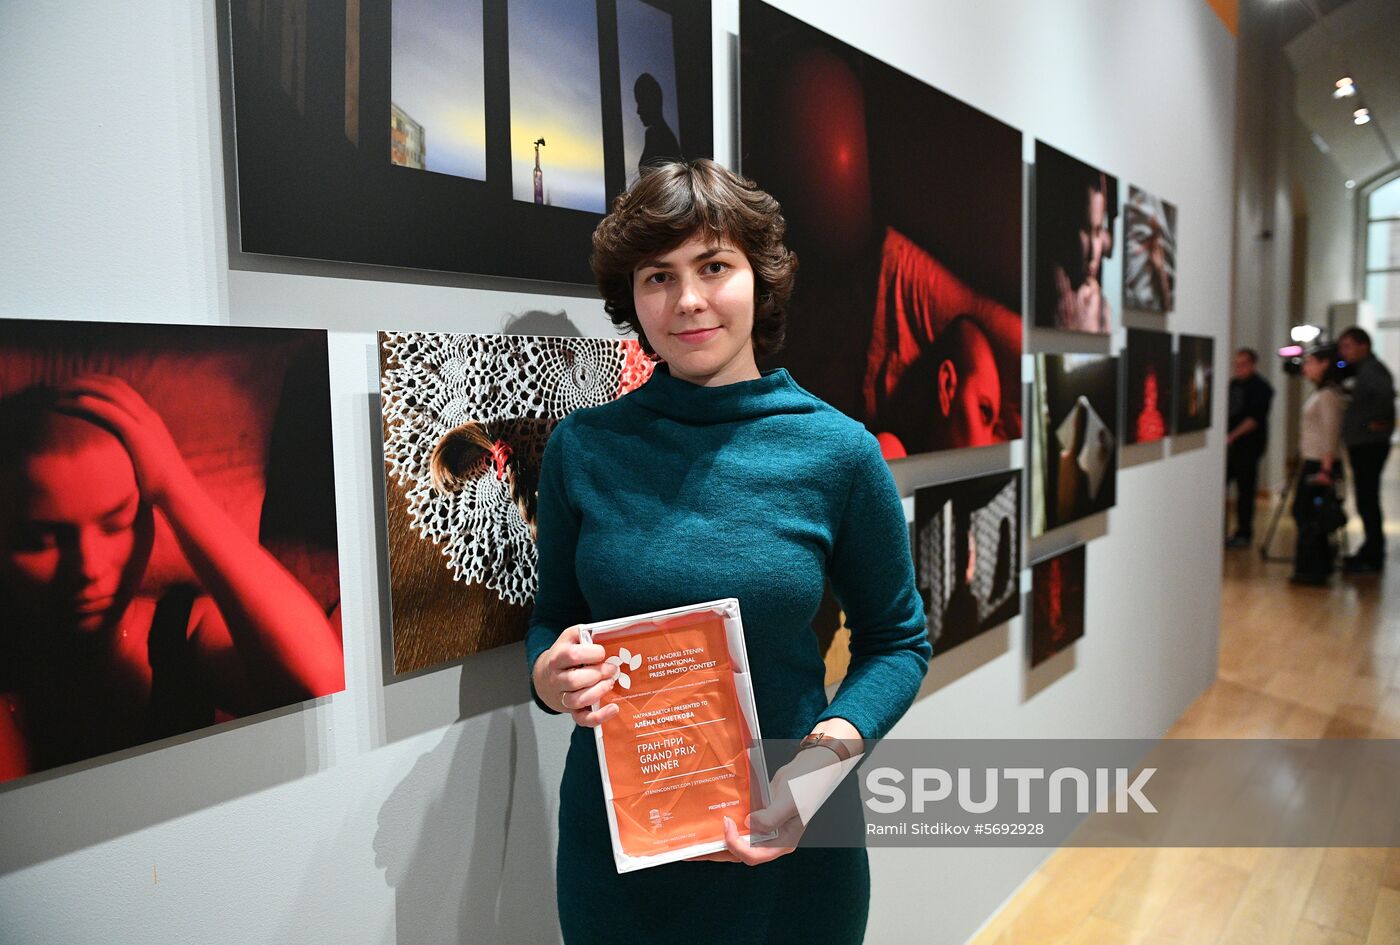 Russia Stenin Photo Contest Exhibition